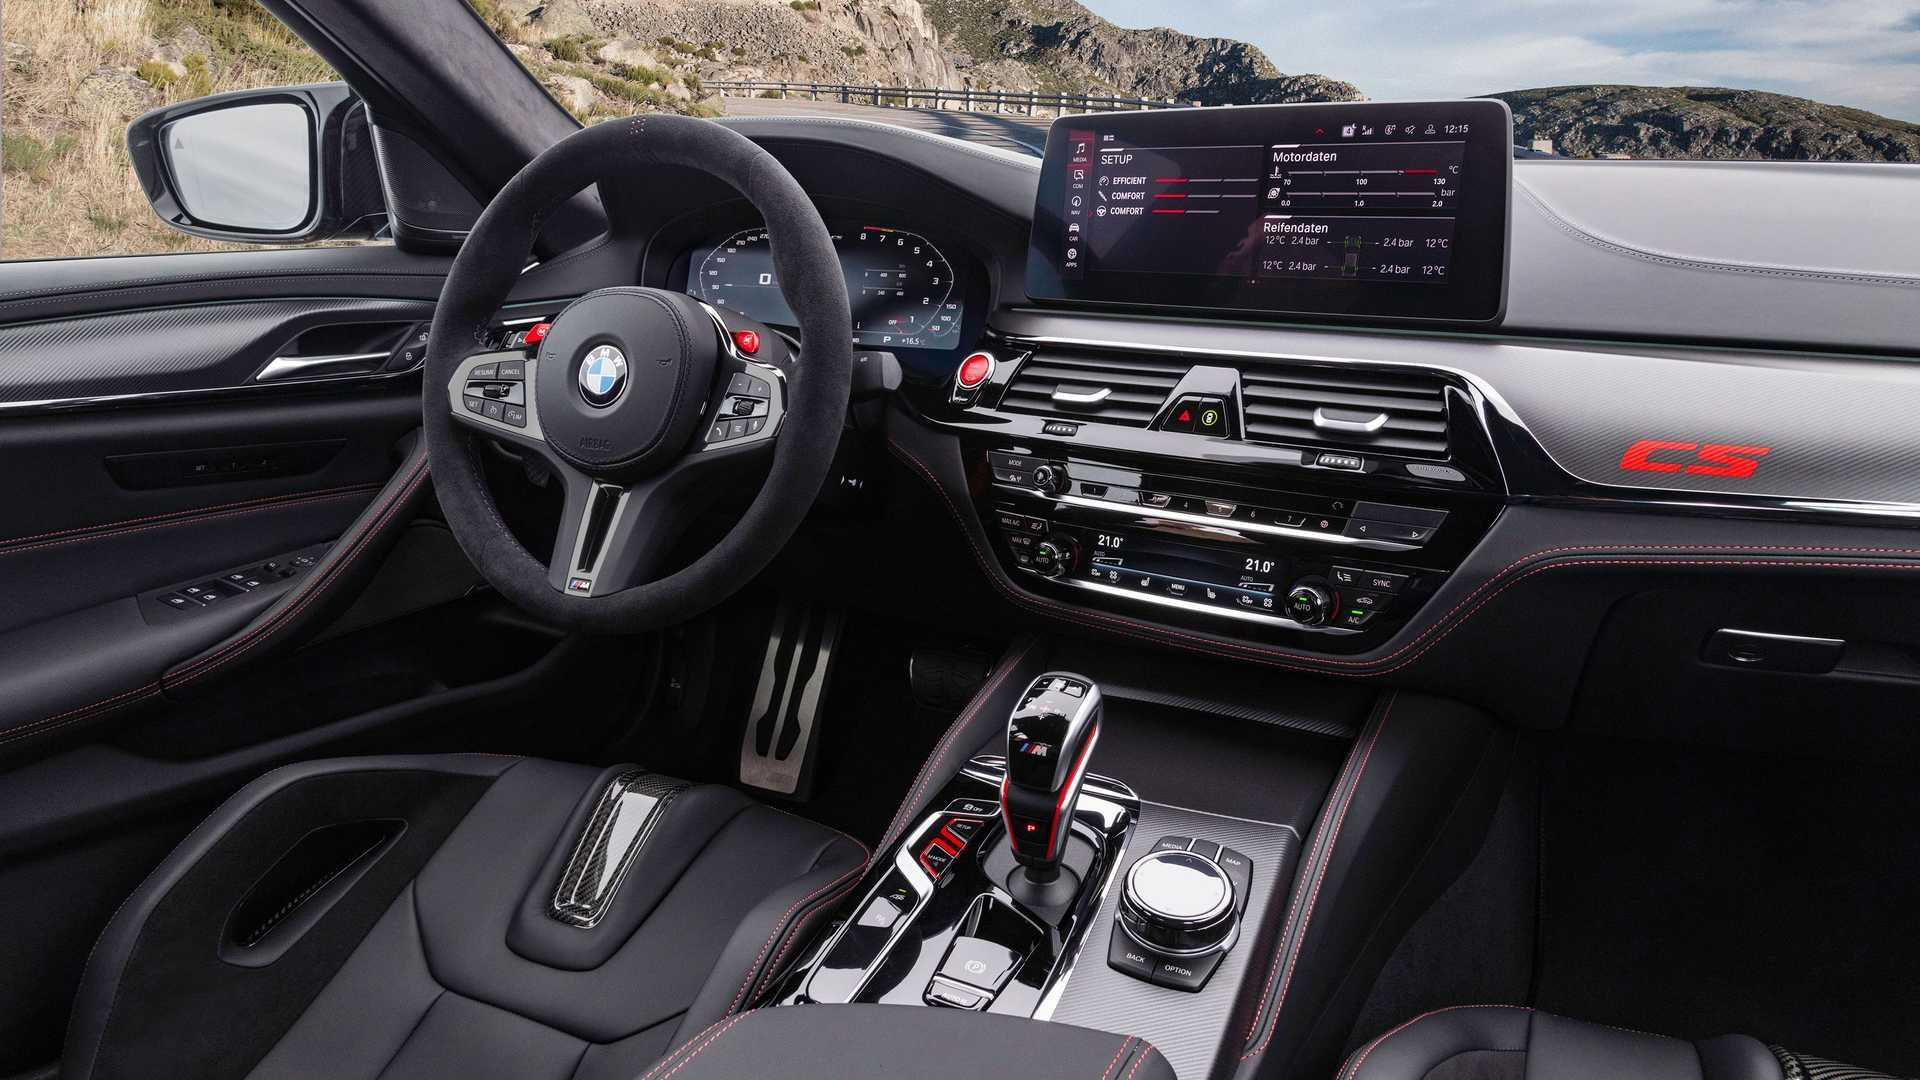 مرجع متخصصين ايران BMW M5 CS بي ام و ام 5 سي اس 2022 نماي داشبورد